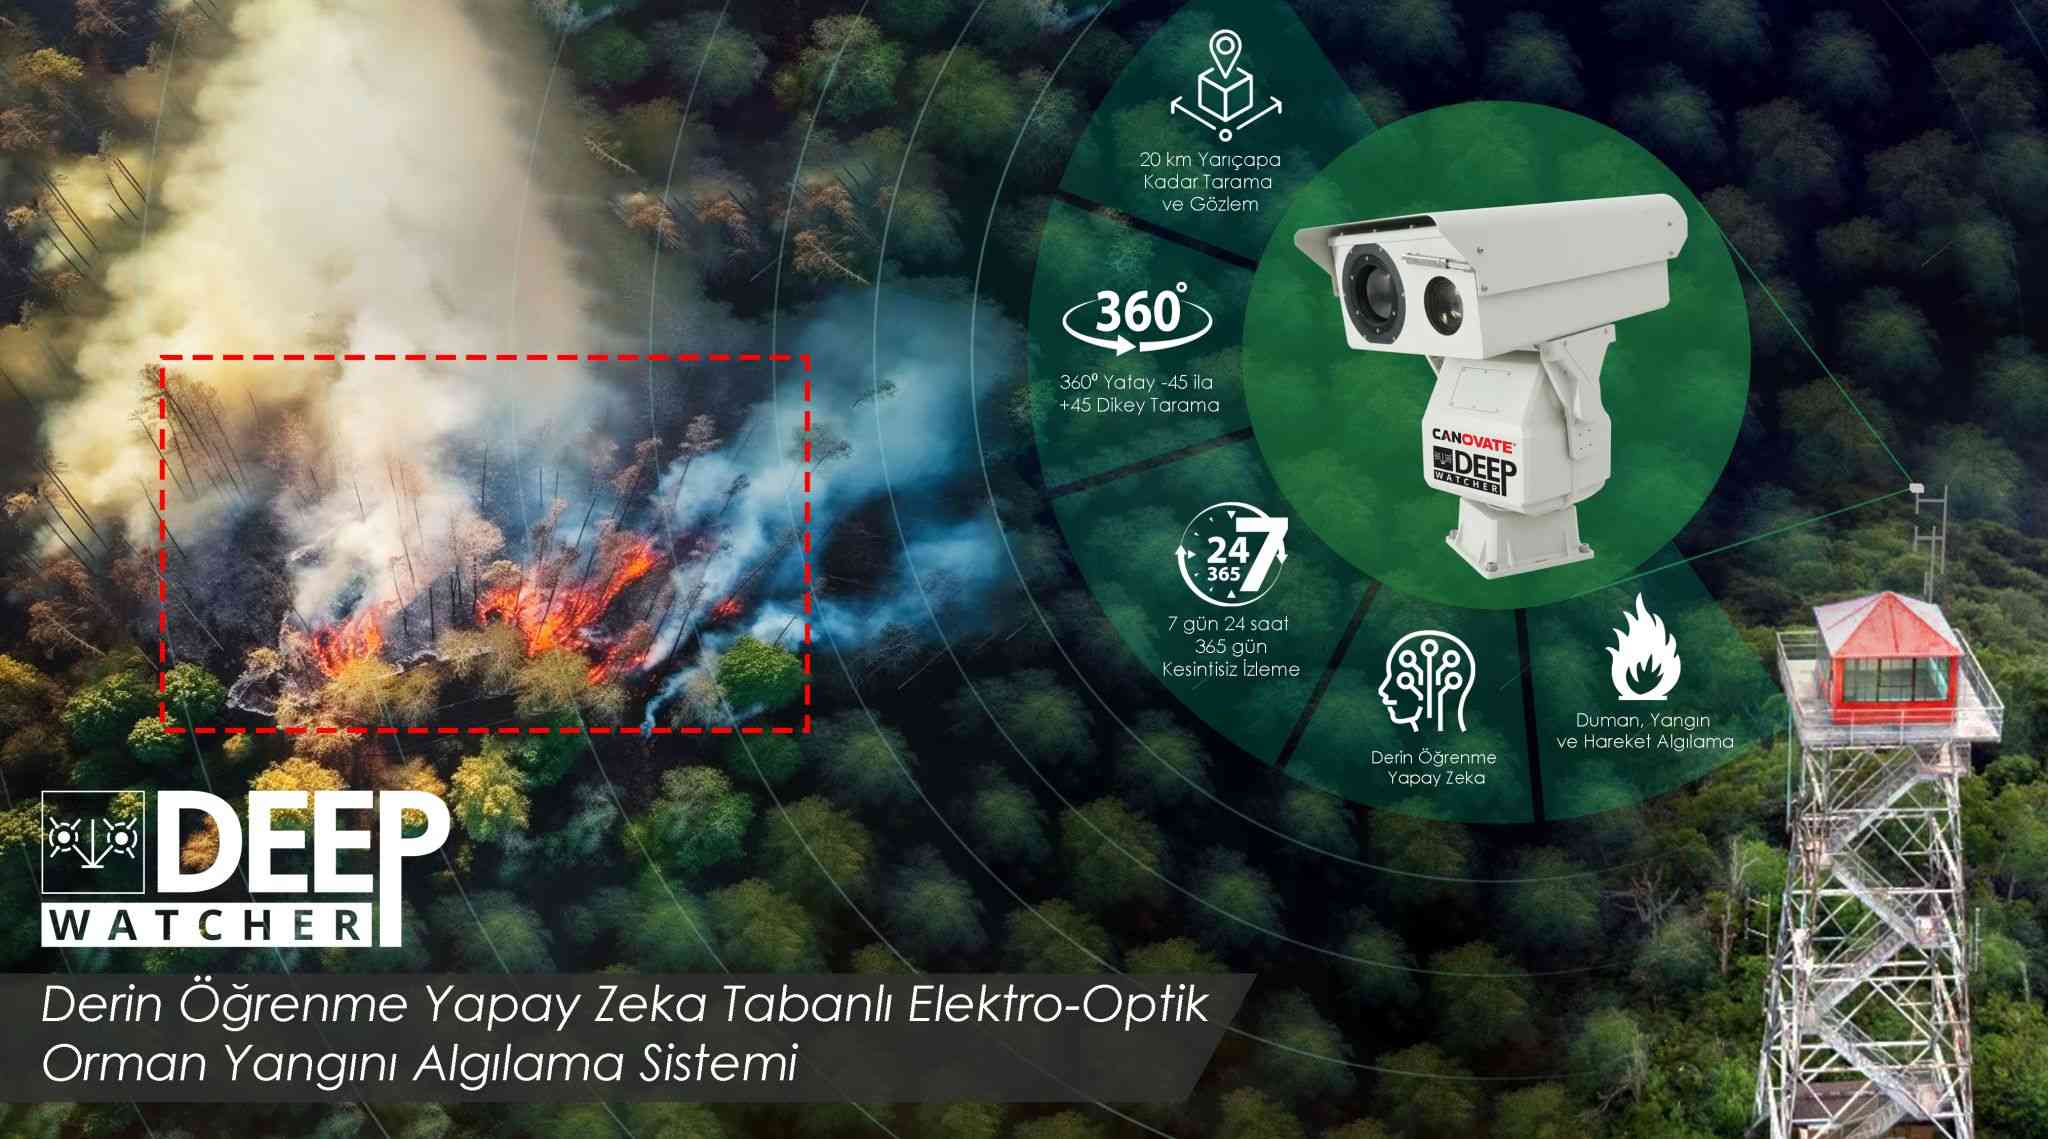 Canovate DeepWatcer Bispectral Termal Radar Sistemi’yle orman yangınları önlenebiliyor